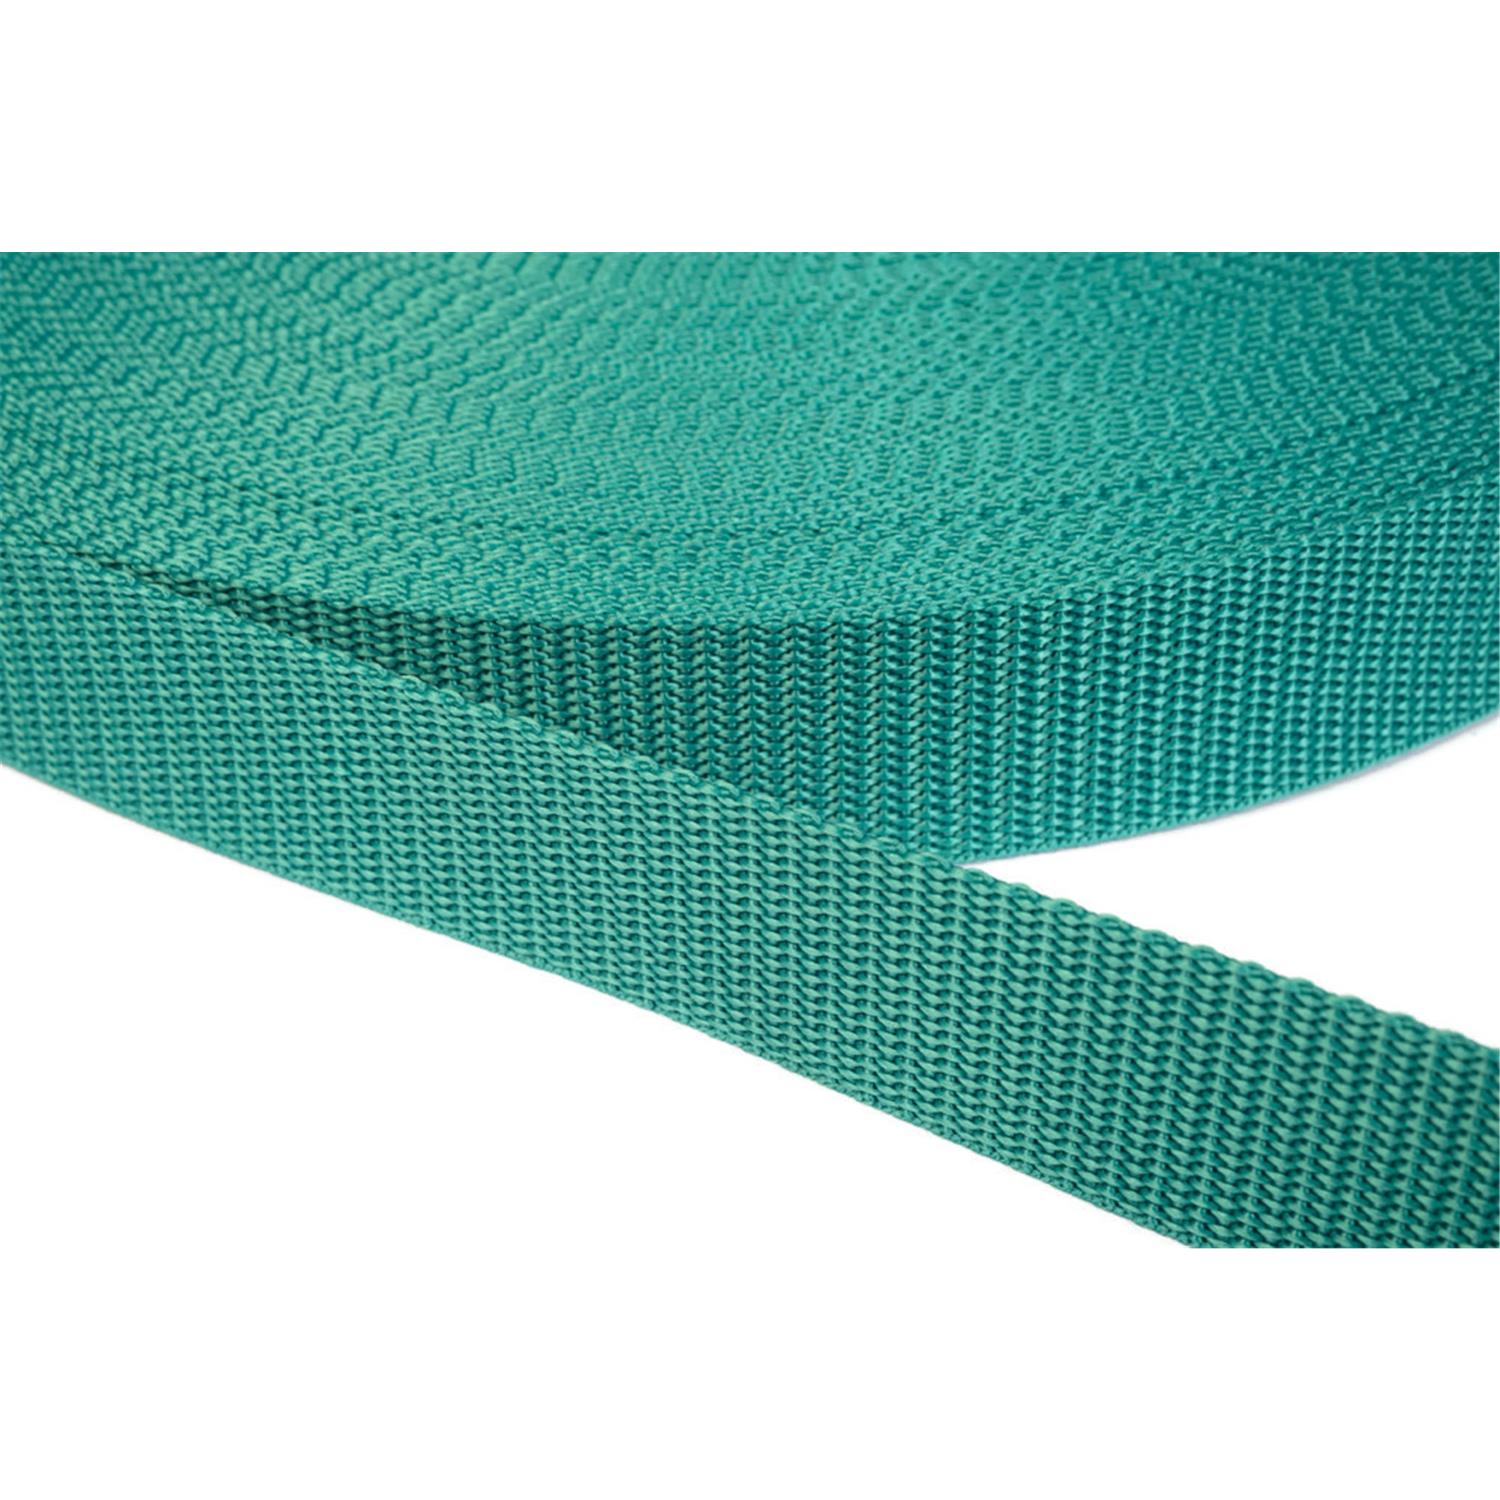 Gurtband 25mm breit aus Polypropylen in 41 Farben 31 - smaragdgrün 6 Meter